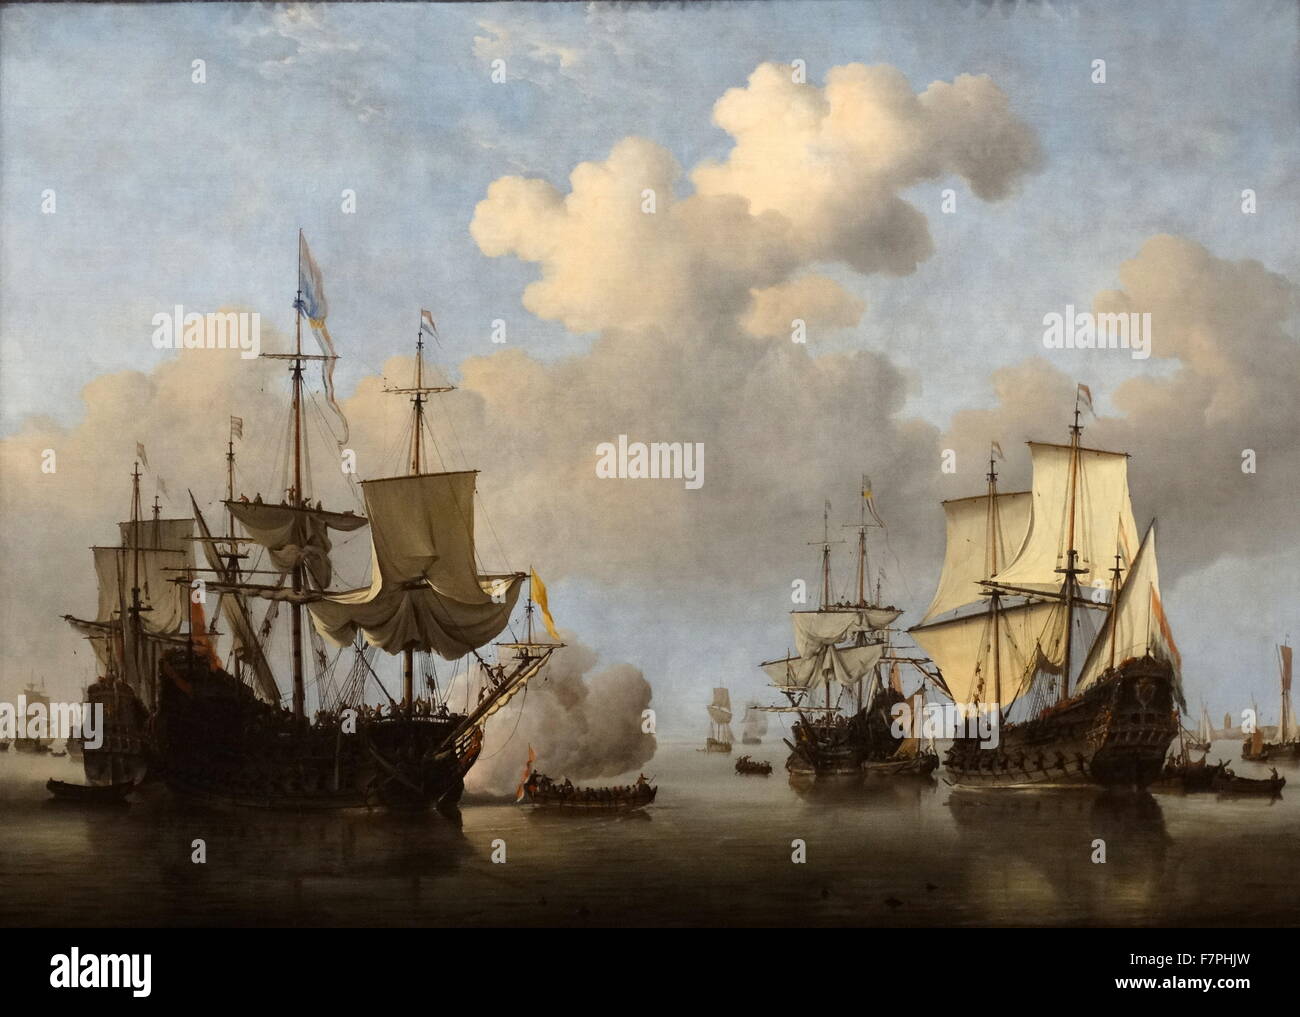 Gemälde mit dem Titel "A niederländische Kriegsschiff salutieren" von Willem van de Velde des jüngere (1633-1707) niederländische Marine Malers. Vom 17. Jahrhundert Stockfoto